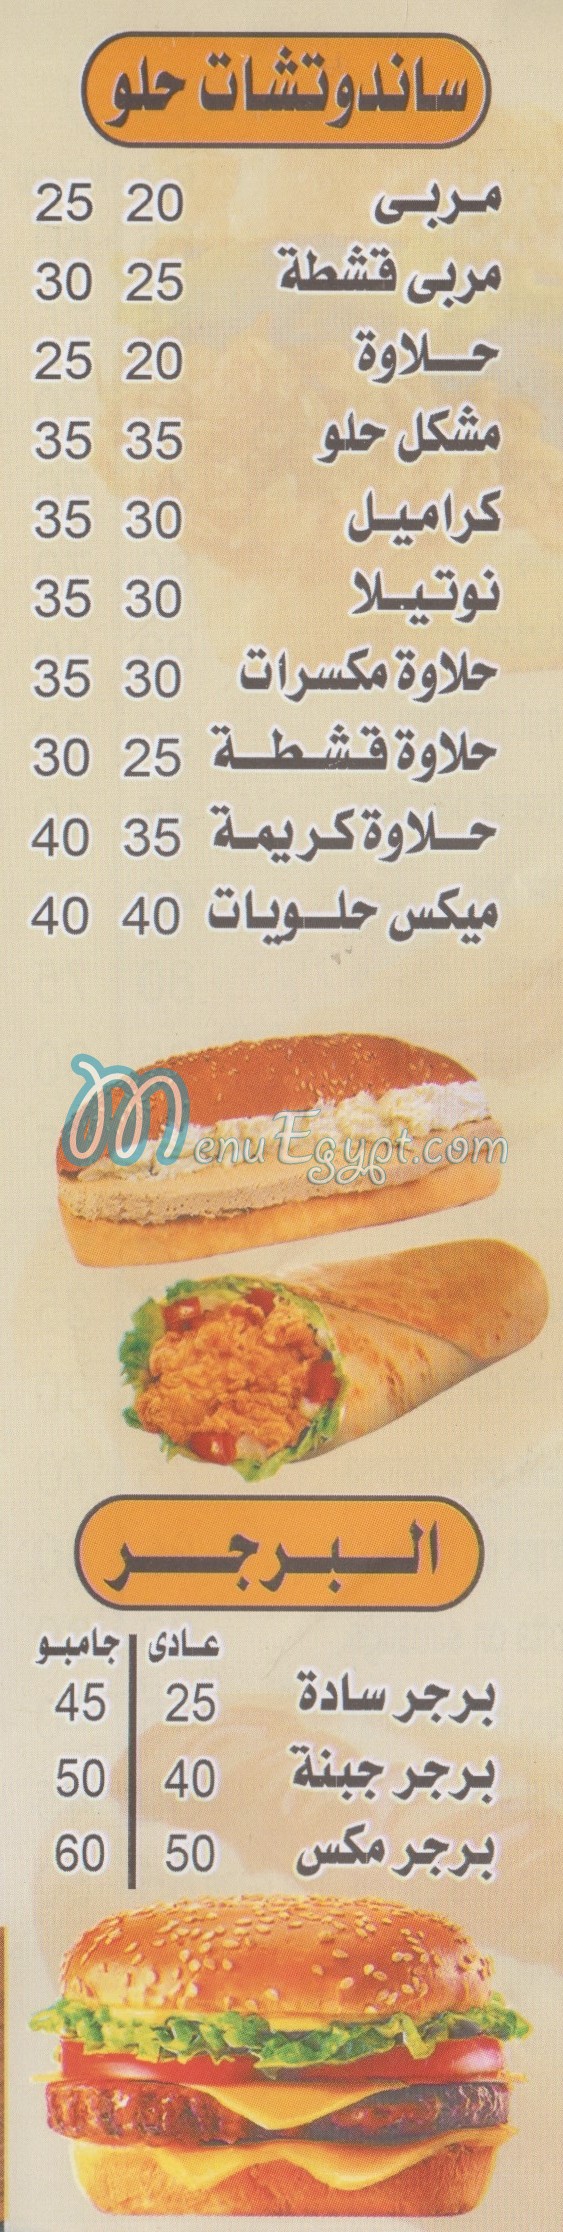 Shams Snack egypt